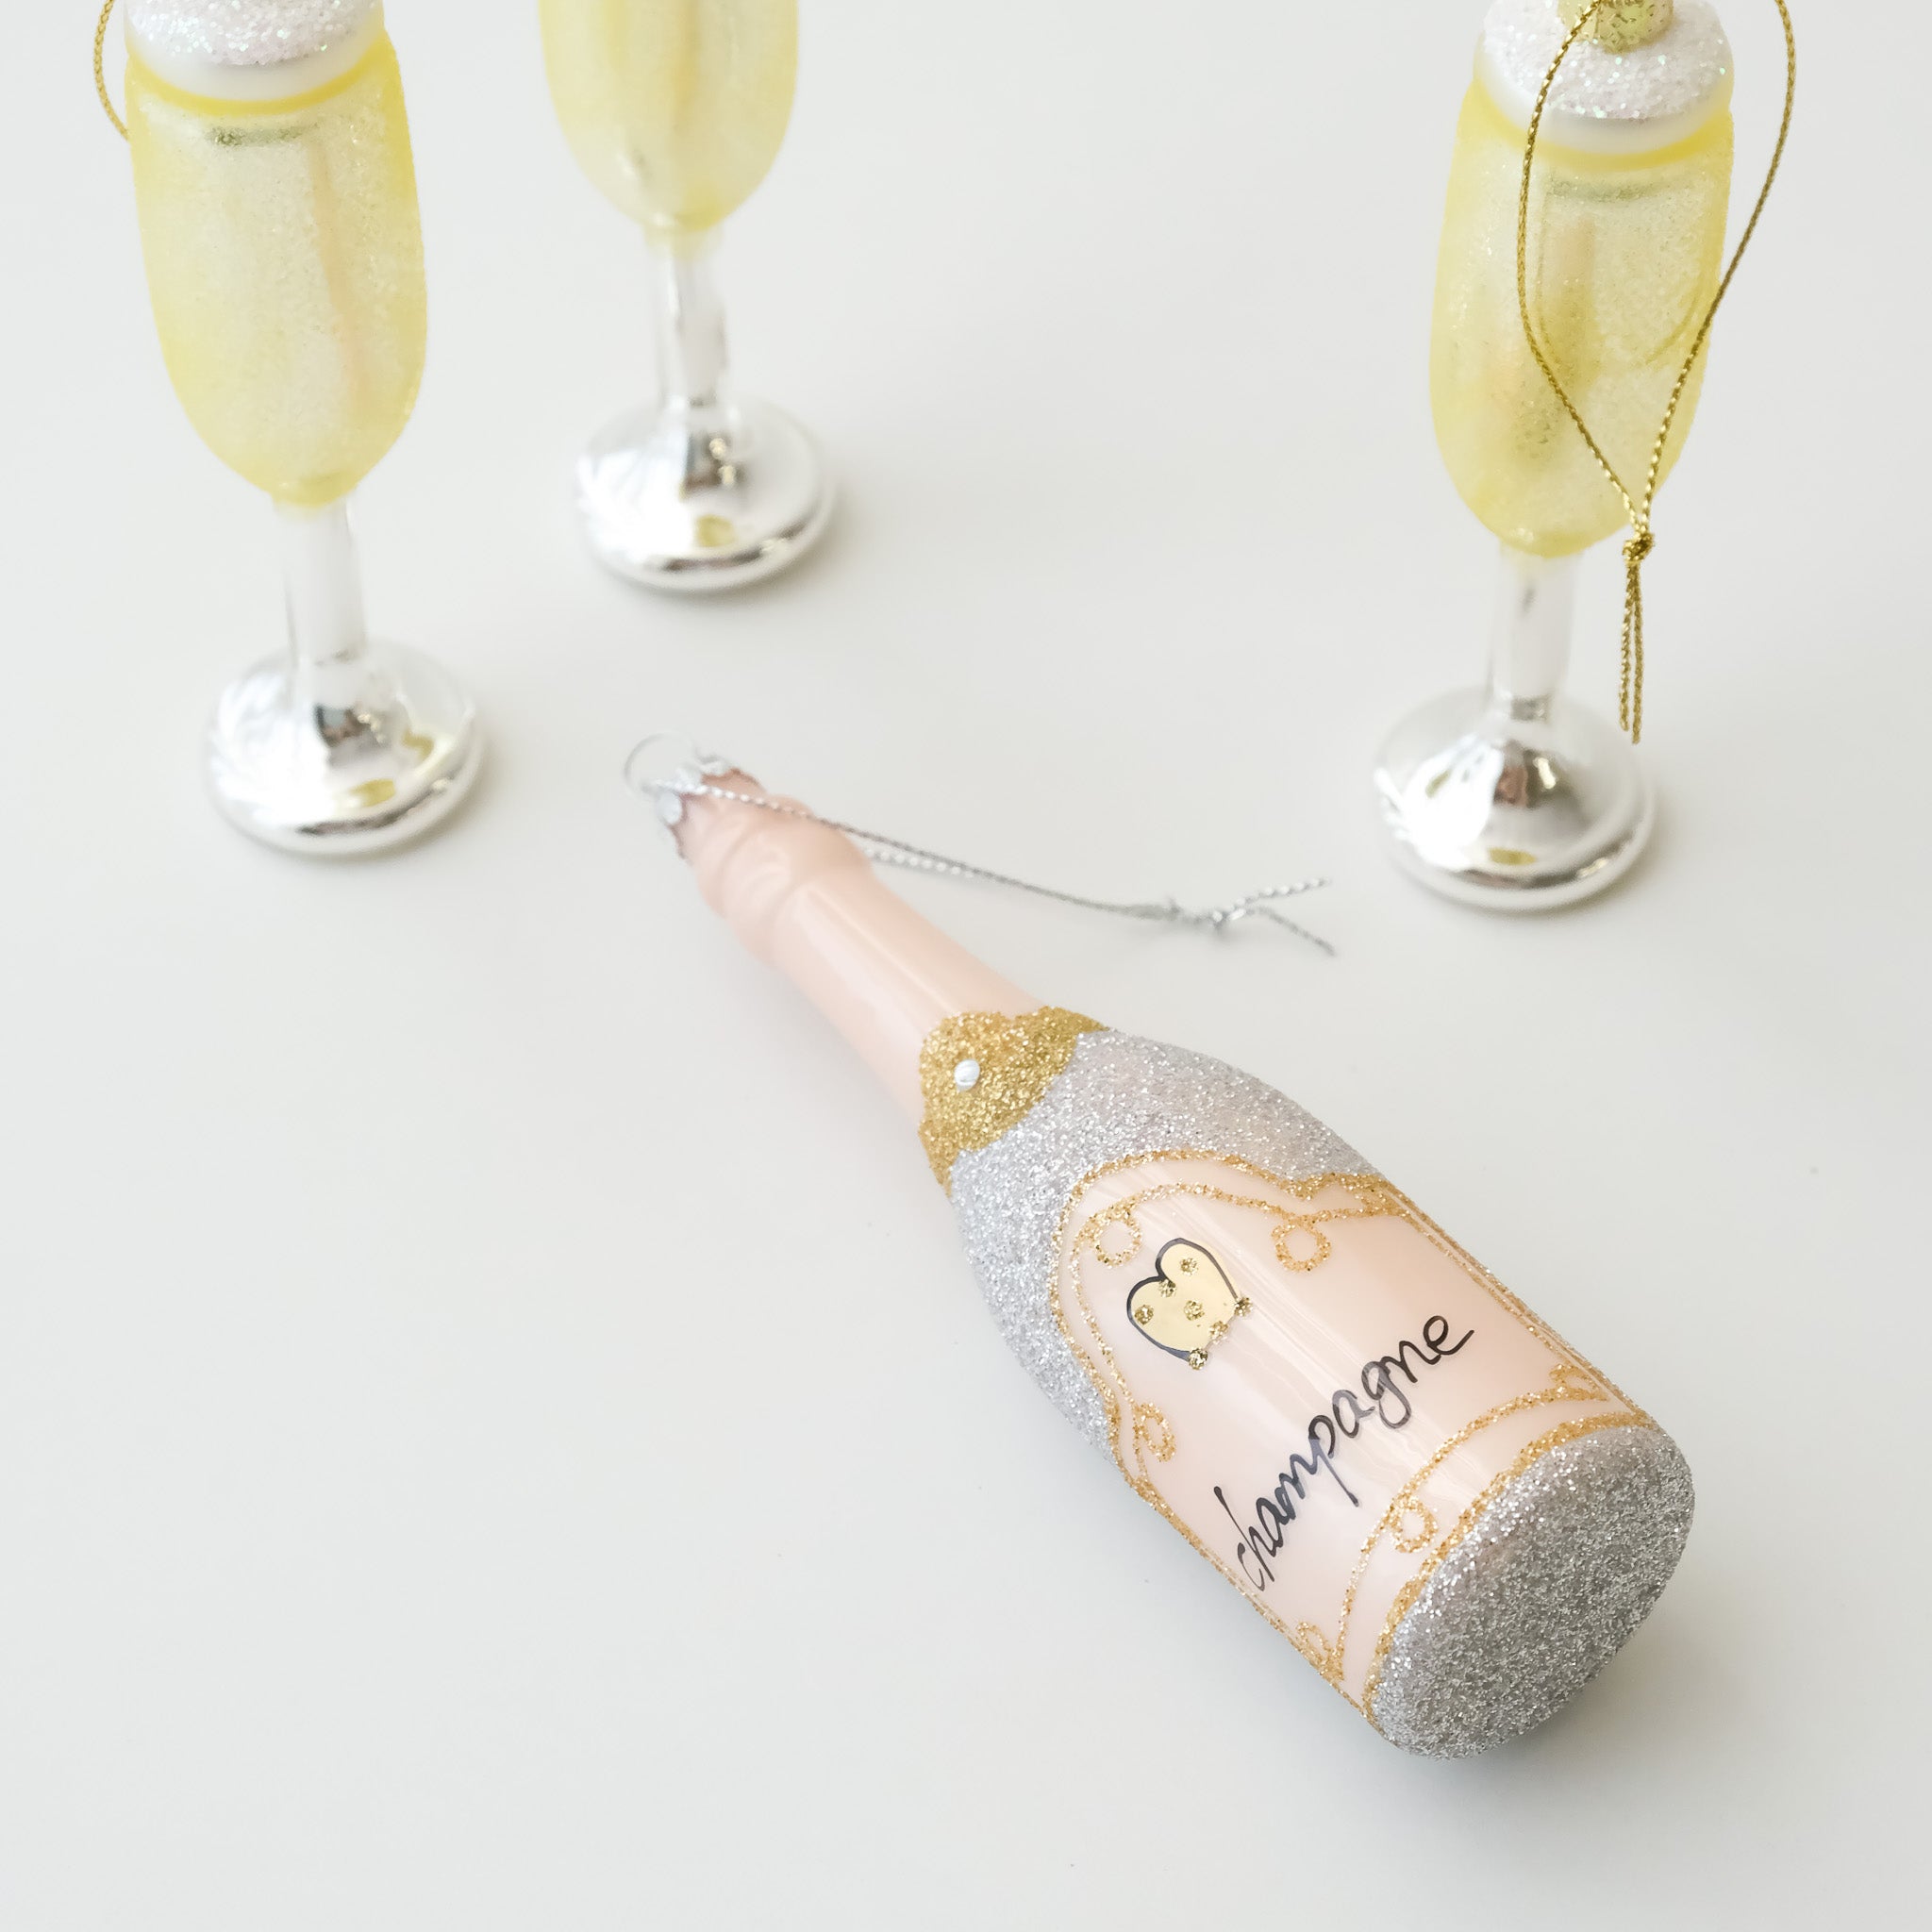 Vintage Heirloom Ornament - Champagne Bottle